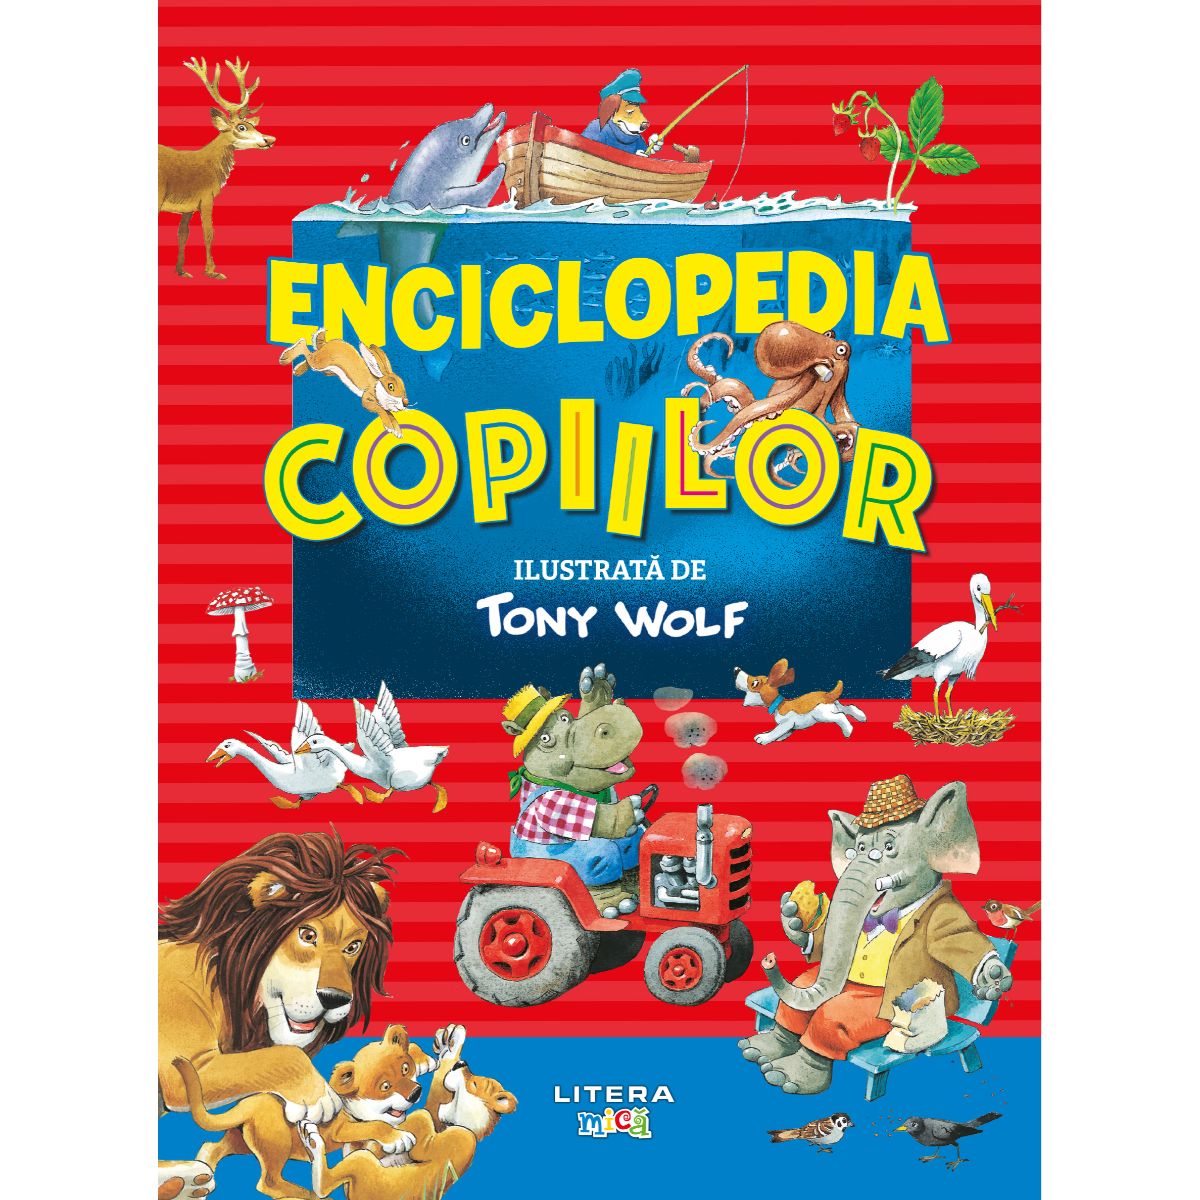 Enciclopedia copiilor, ilustrata de Tony Wolf